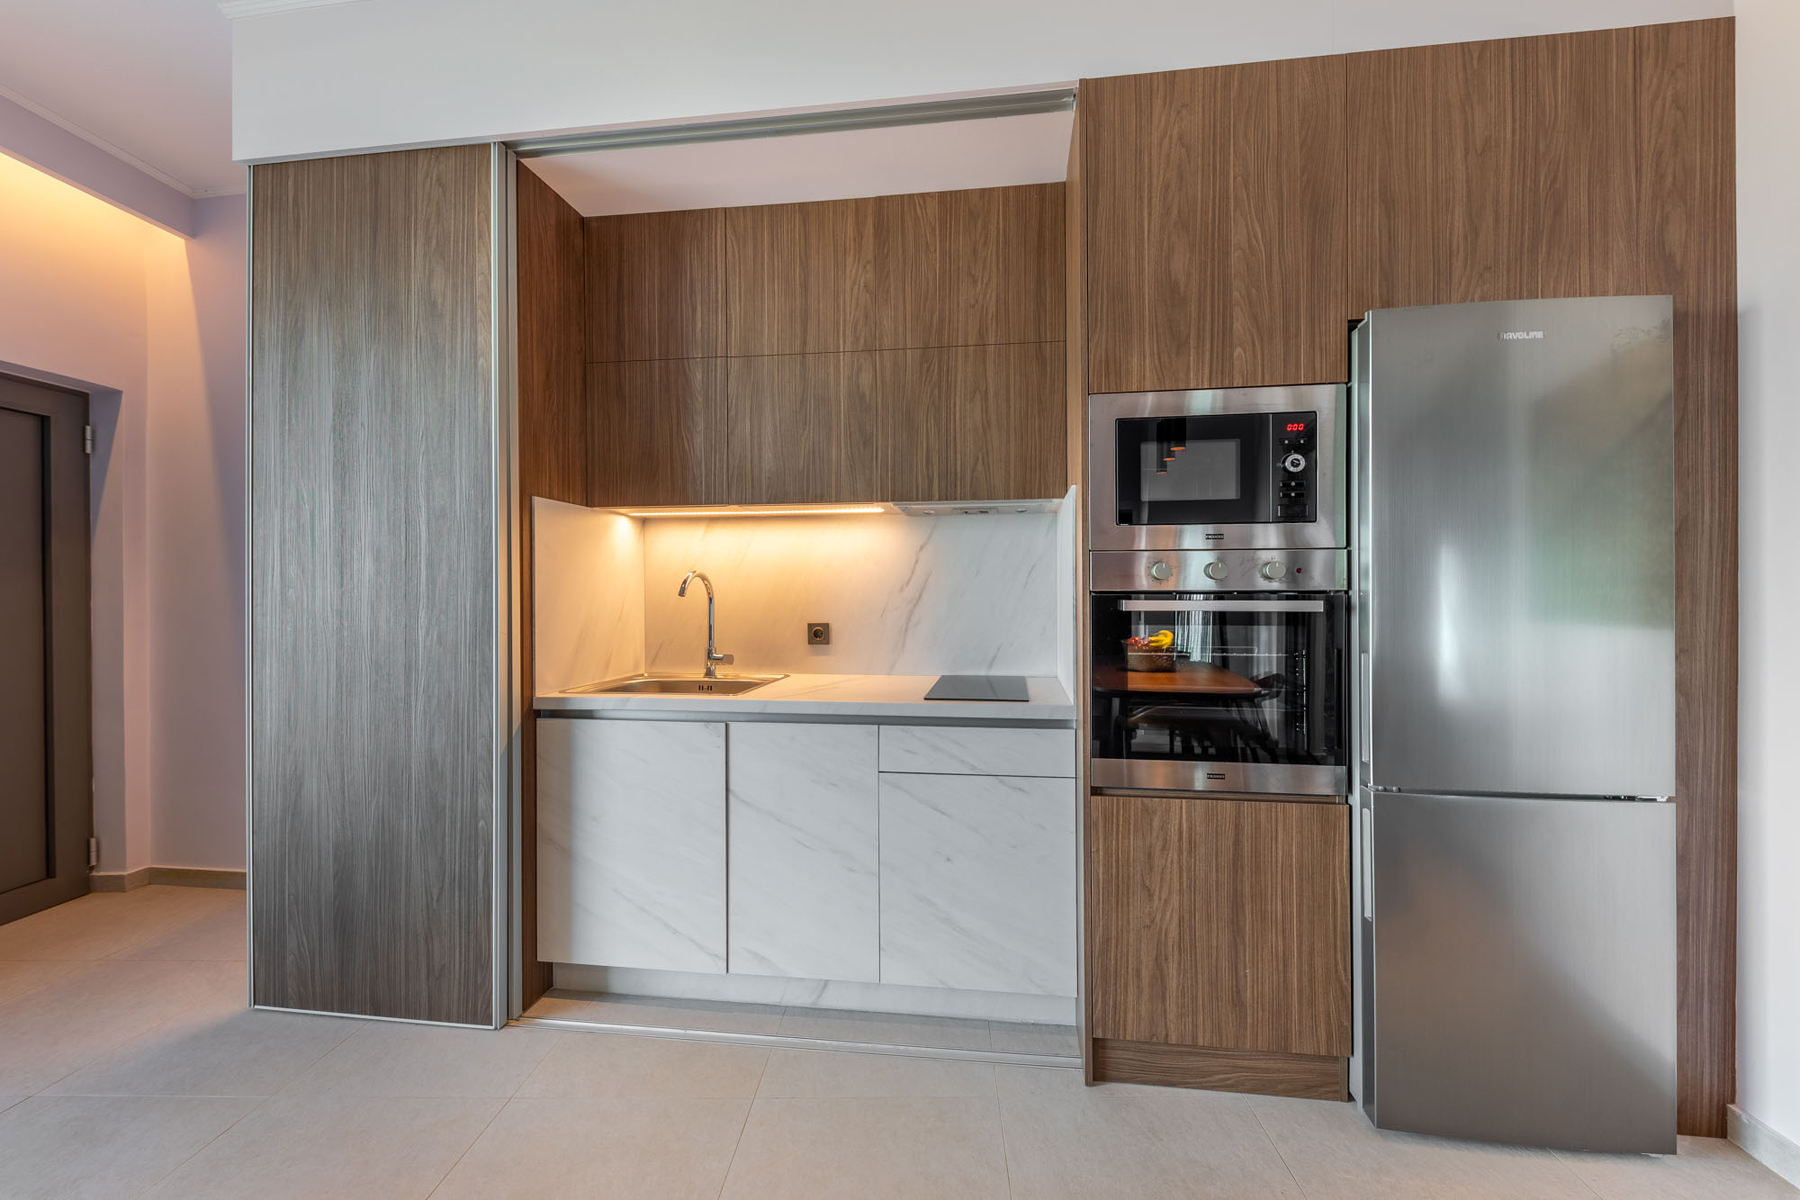 z luxury villa bita lefkada kitchen oven microwave wasgbasin kitchen